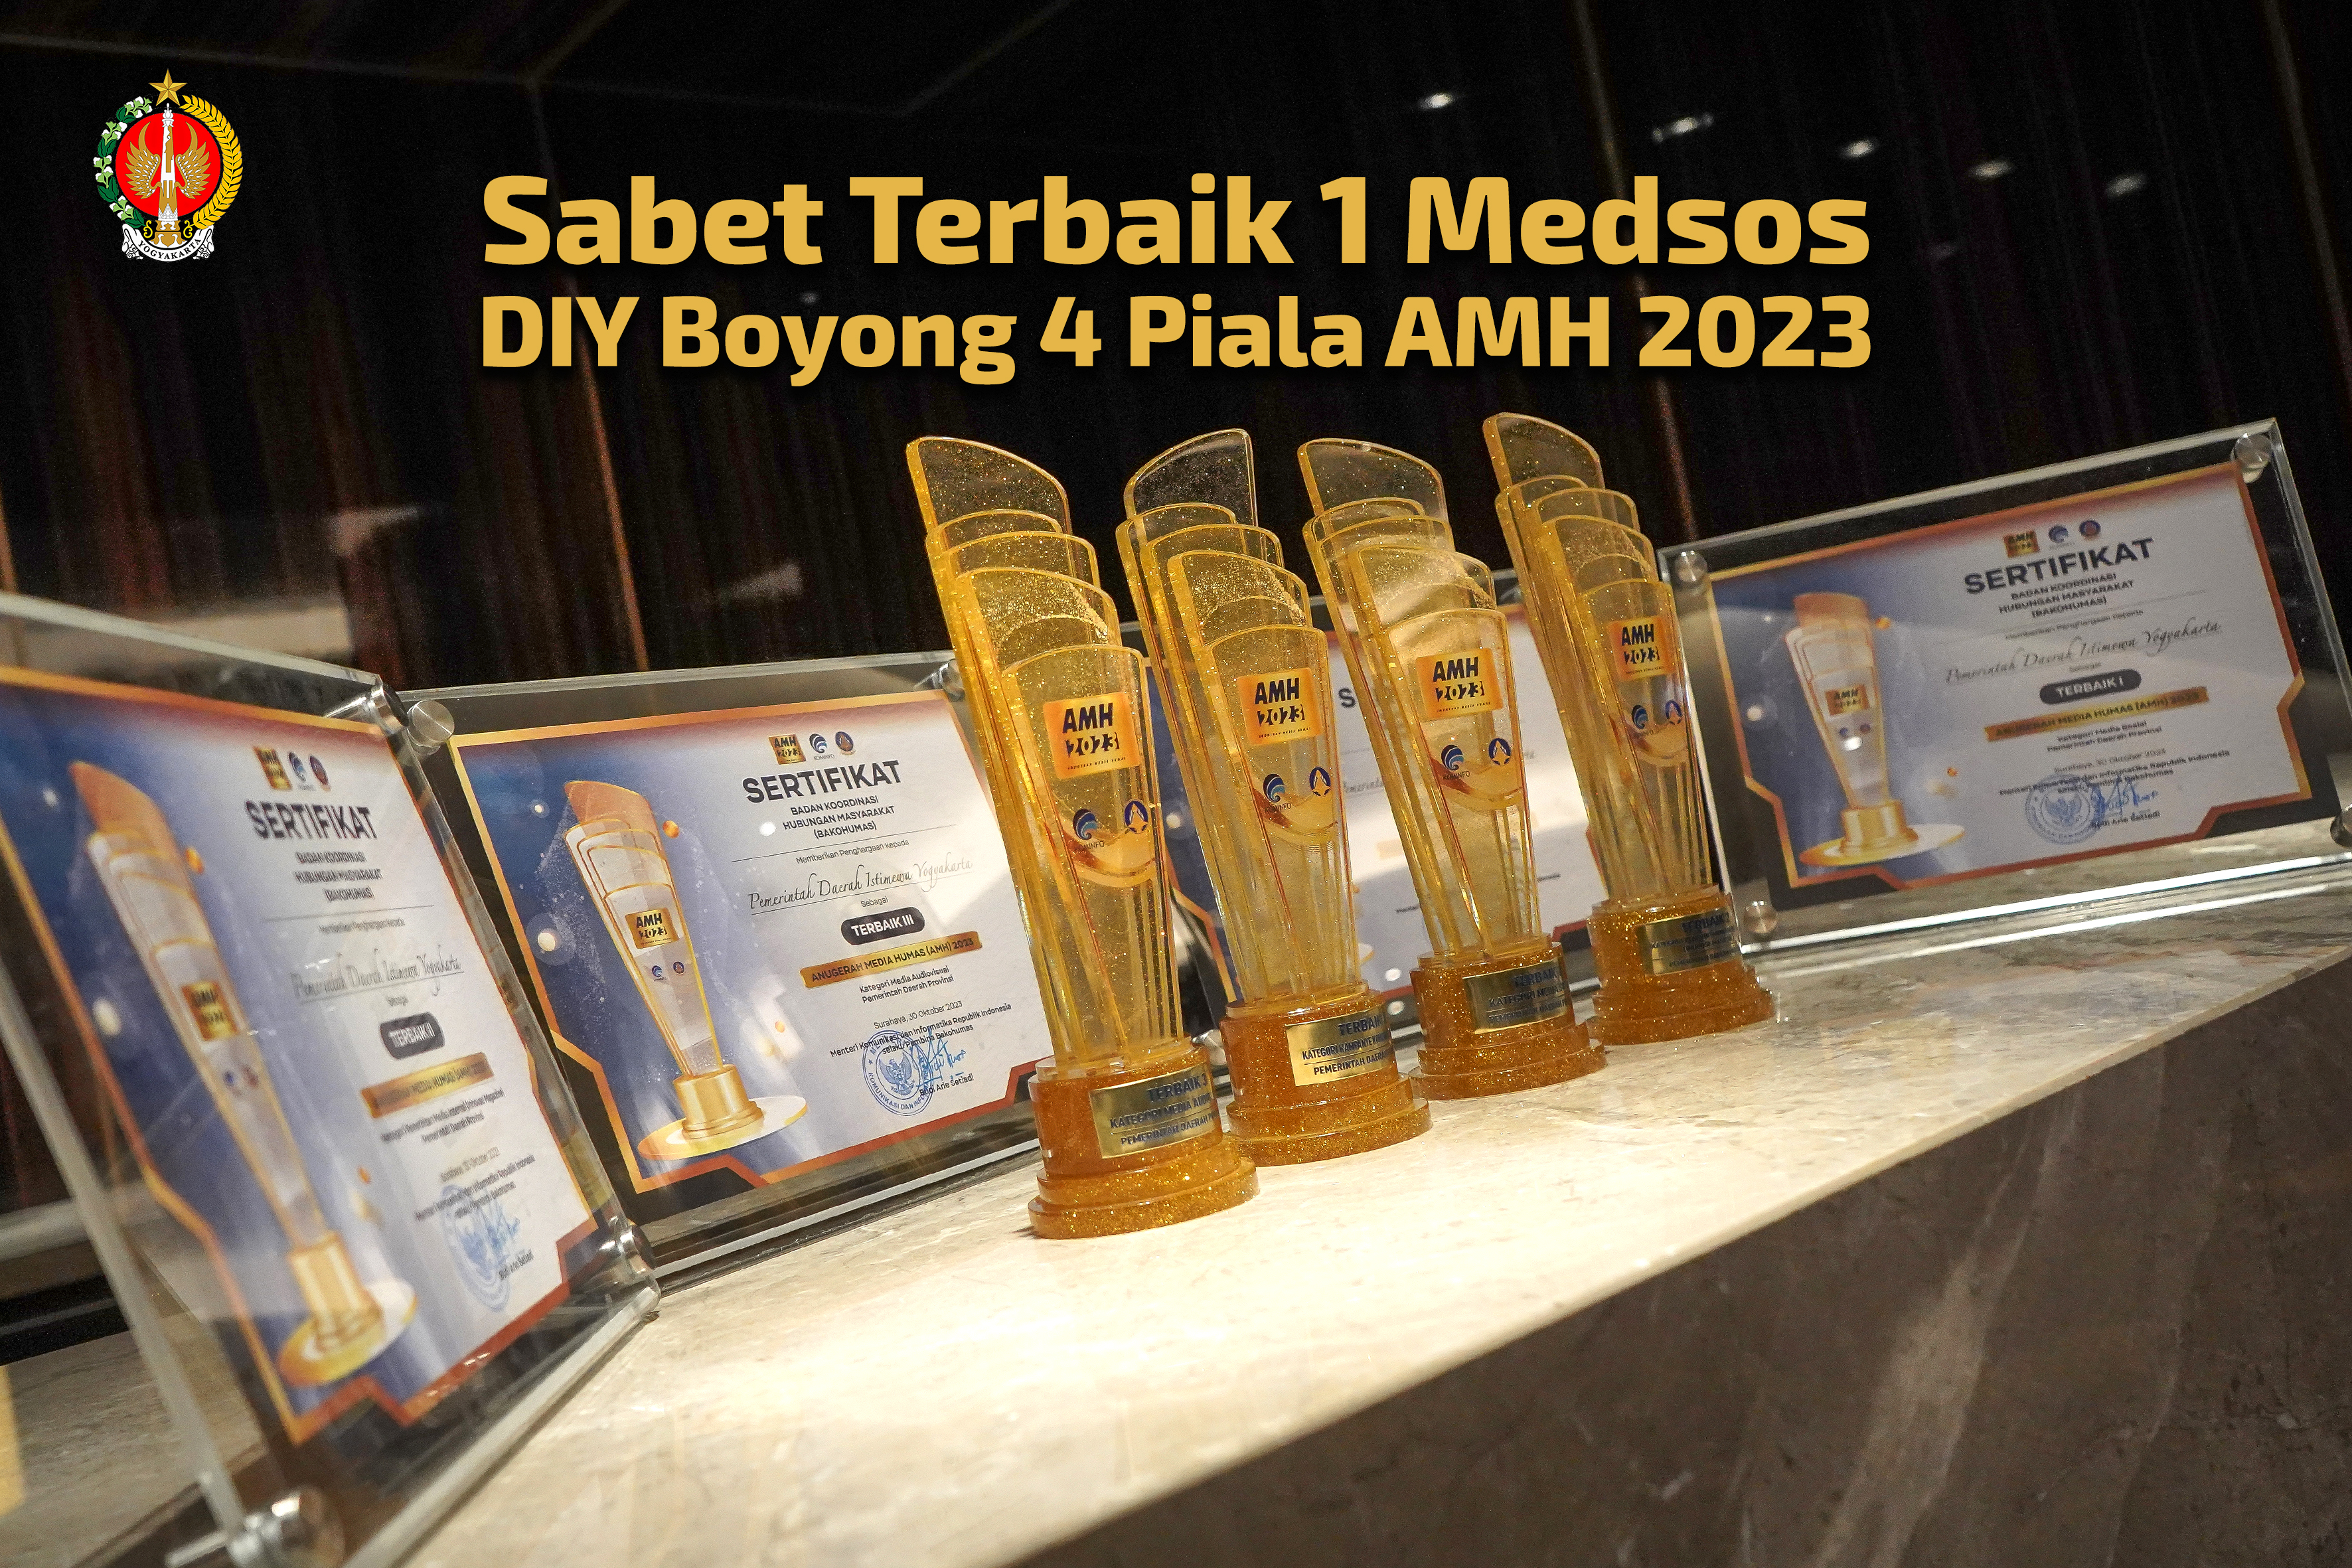 Sabet Terbaik 1 Medsos, DIY Boyong 4 Piala AMH 2023